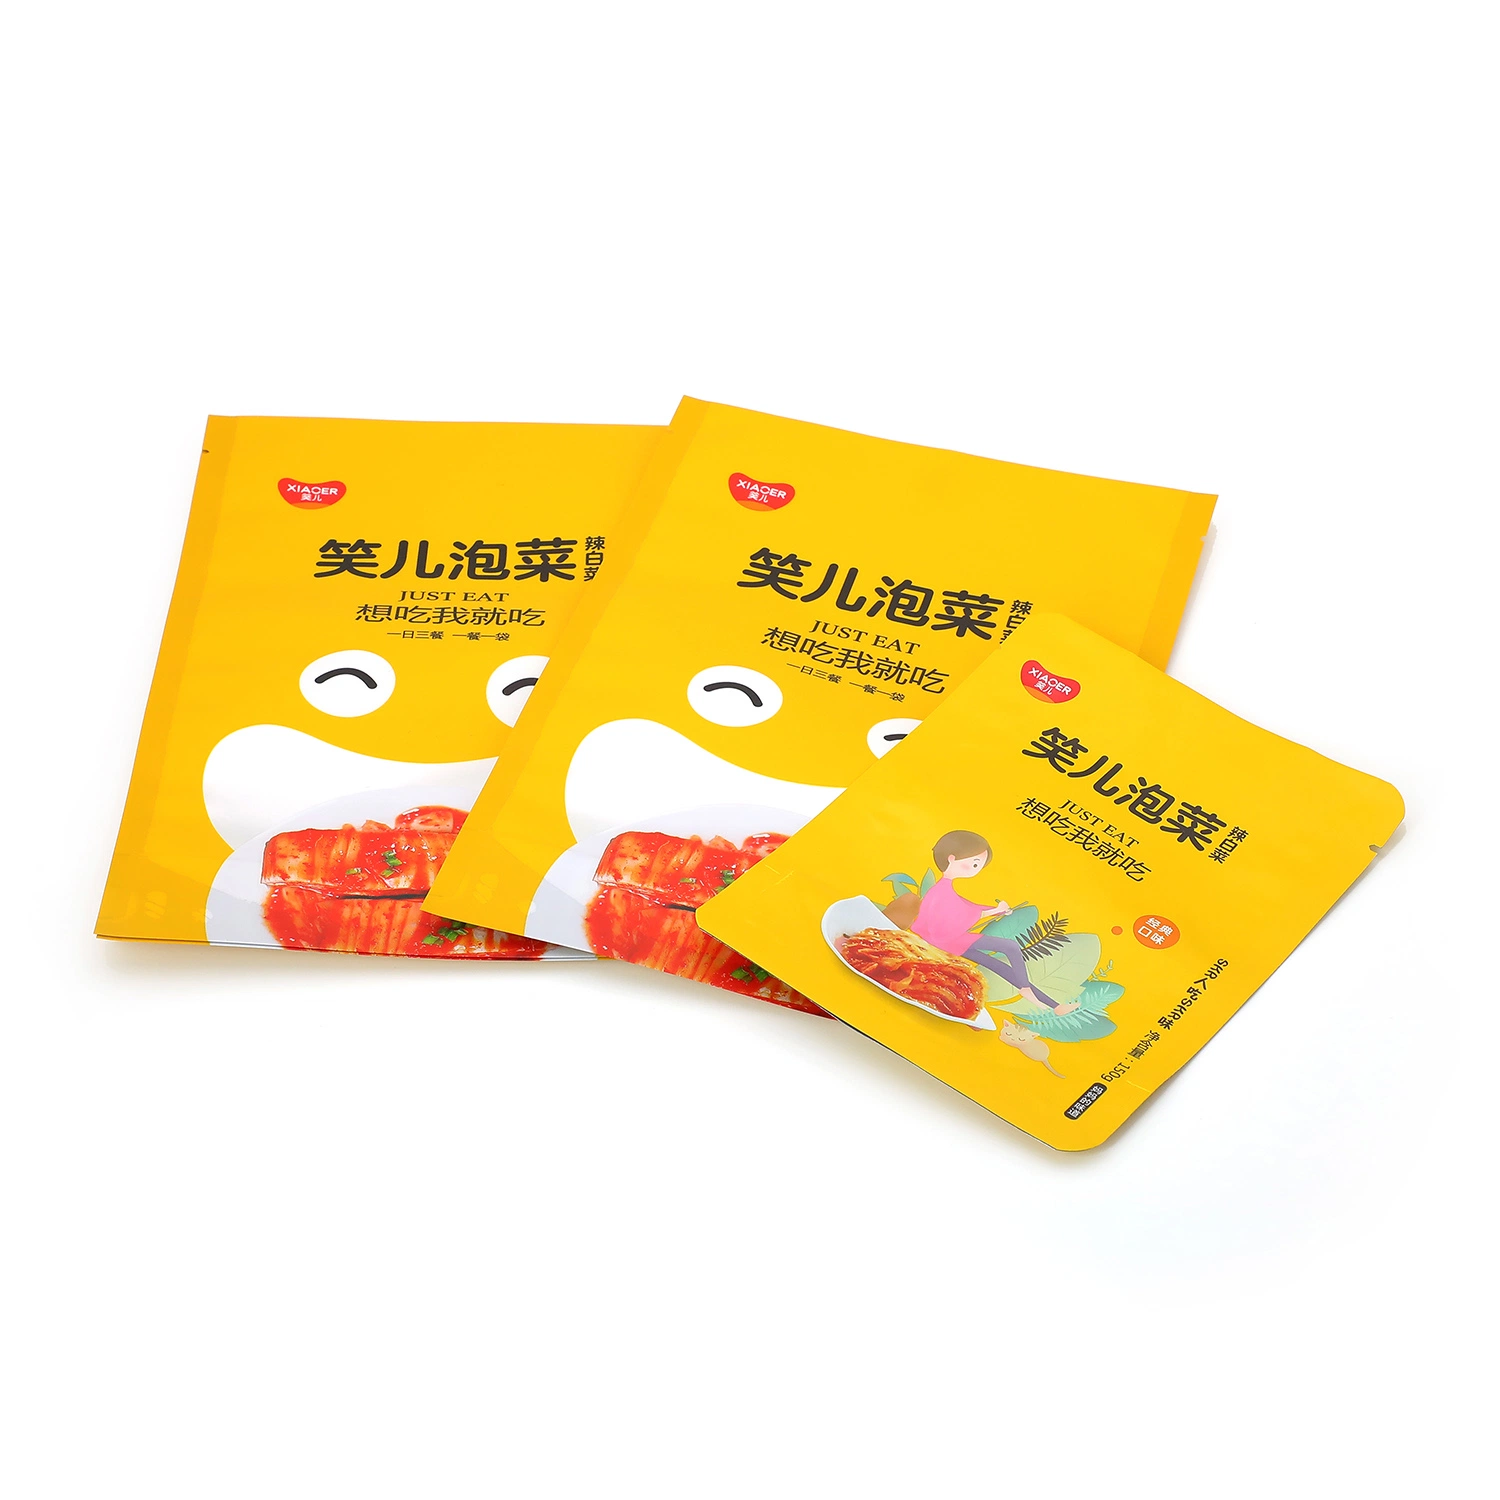 Краут маринованный Kimchi (корейский) яблочный соус Упаковка Custom Printing перерабатываемый Майларовый мешок из фольги серебристого цвета